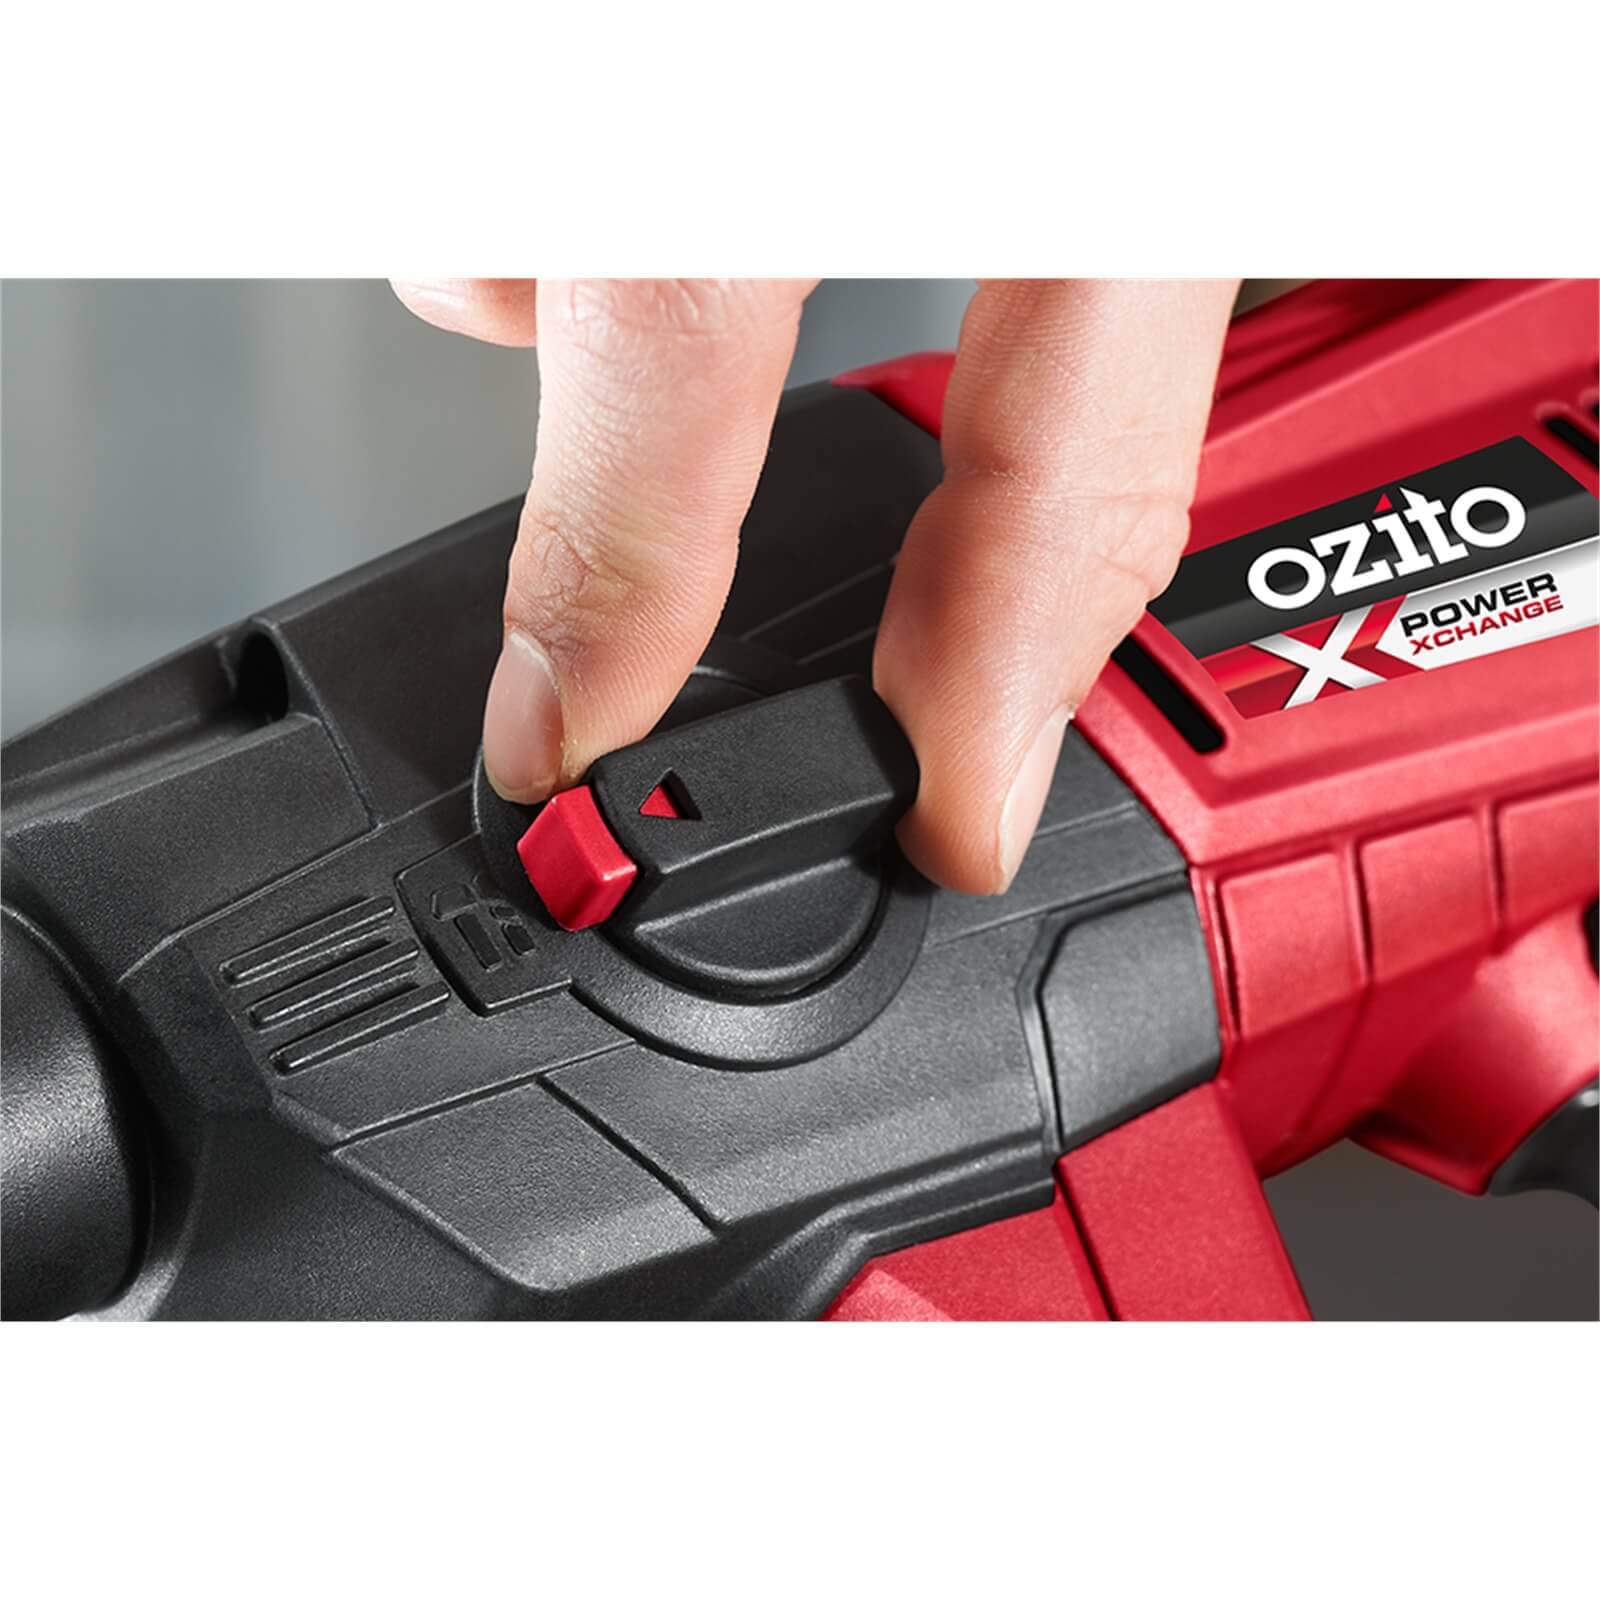 Ozito by Einhell Power X Change 18V Cordless Rotary Hammer Skin